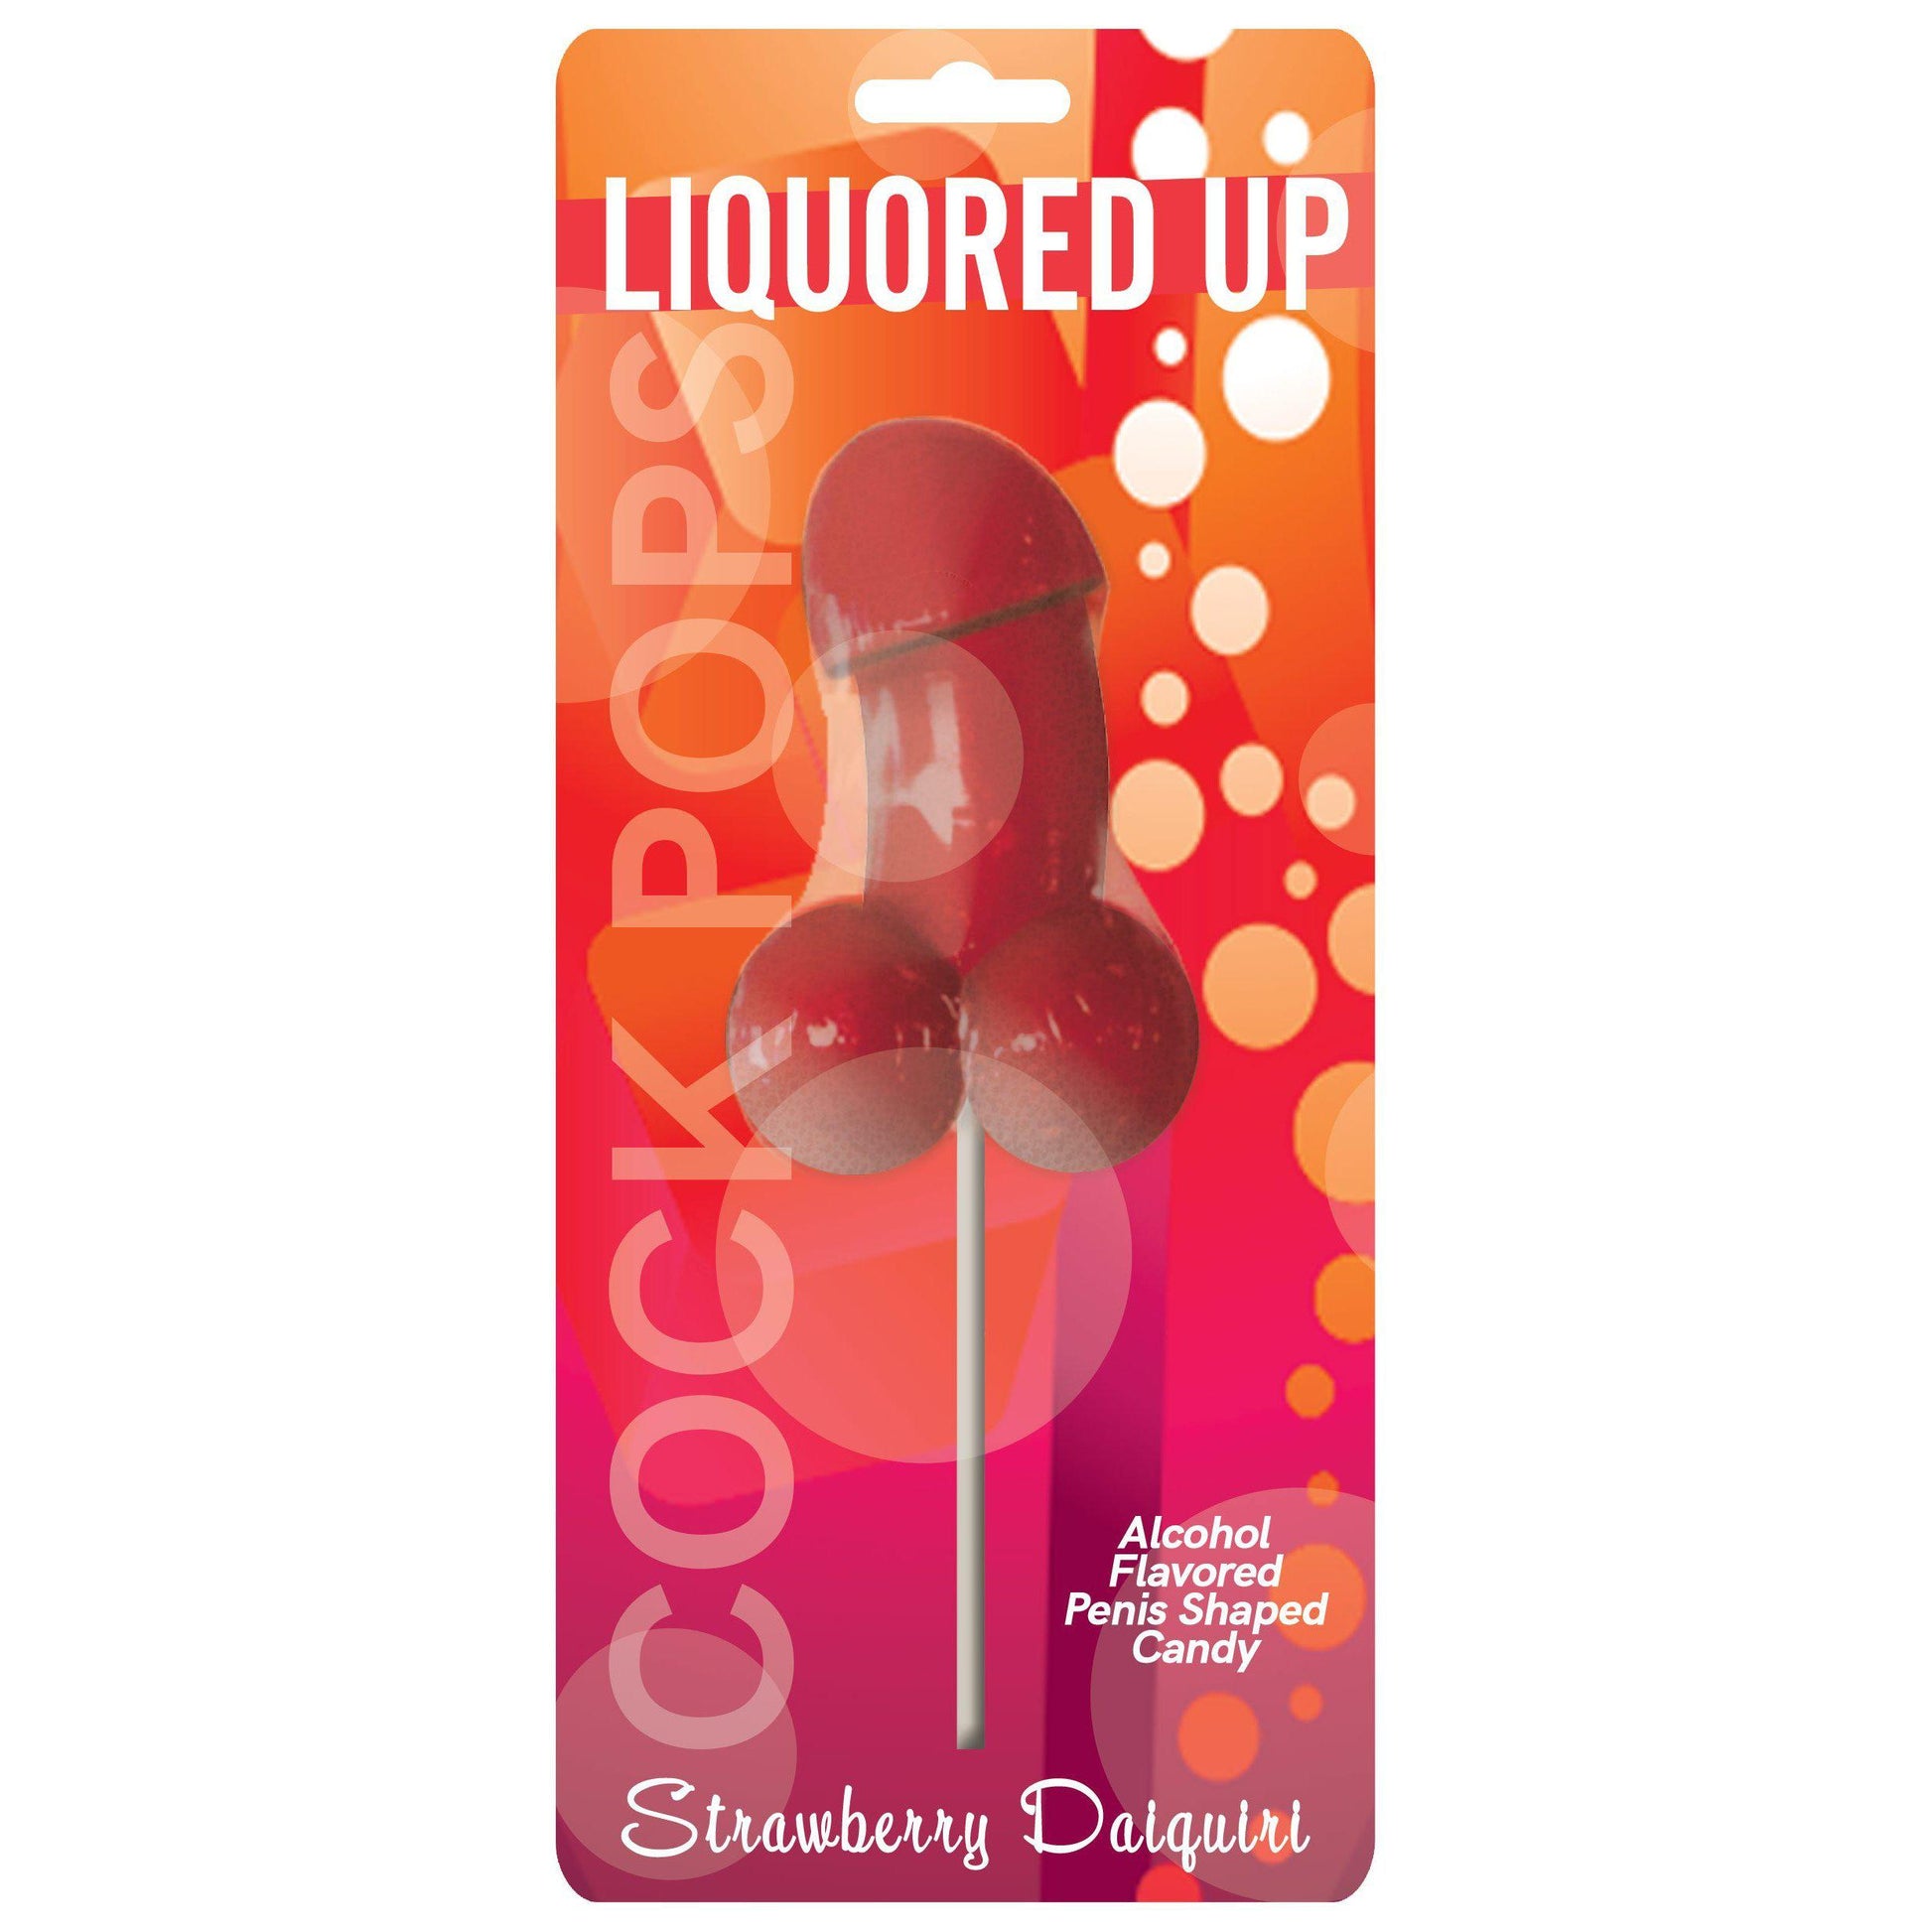 Liquored Up - Strawberry Daiquiri